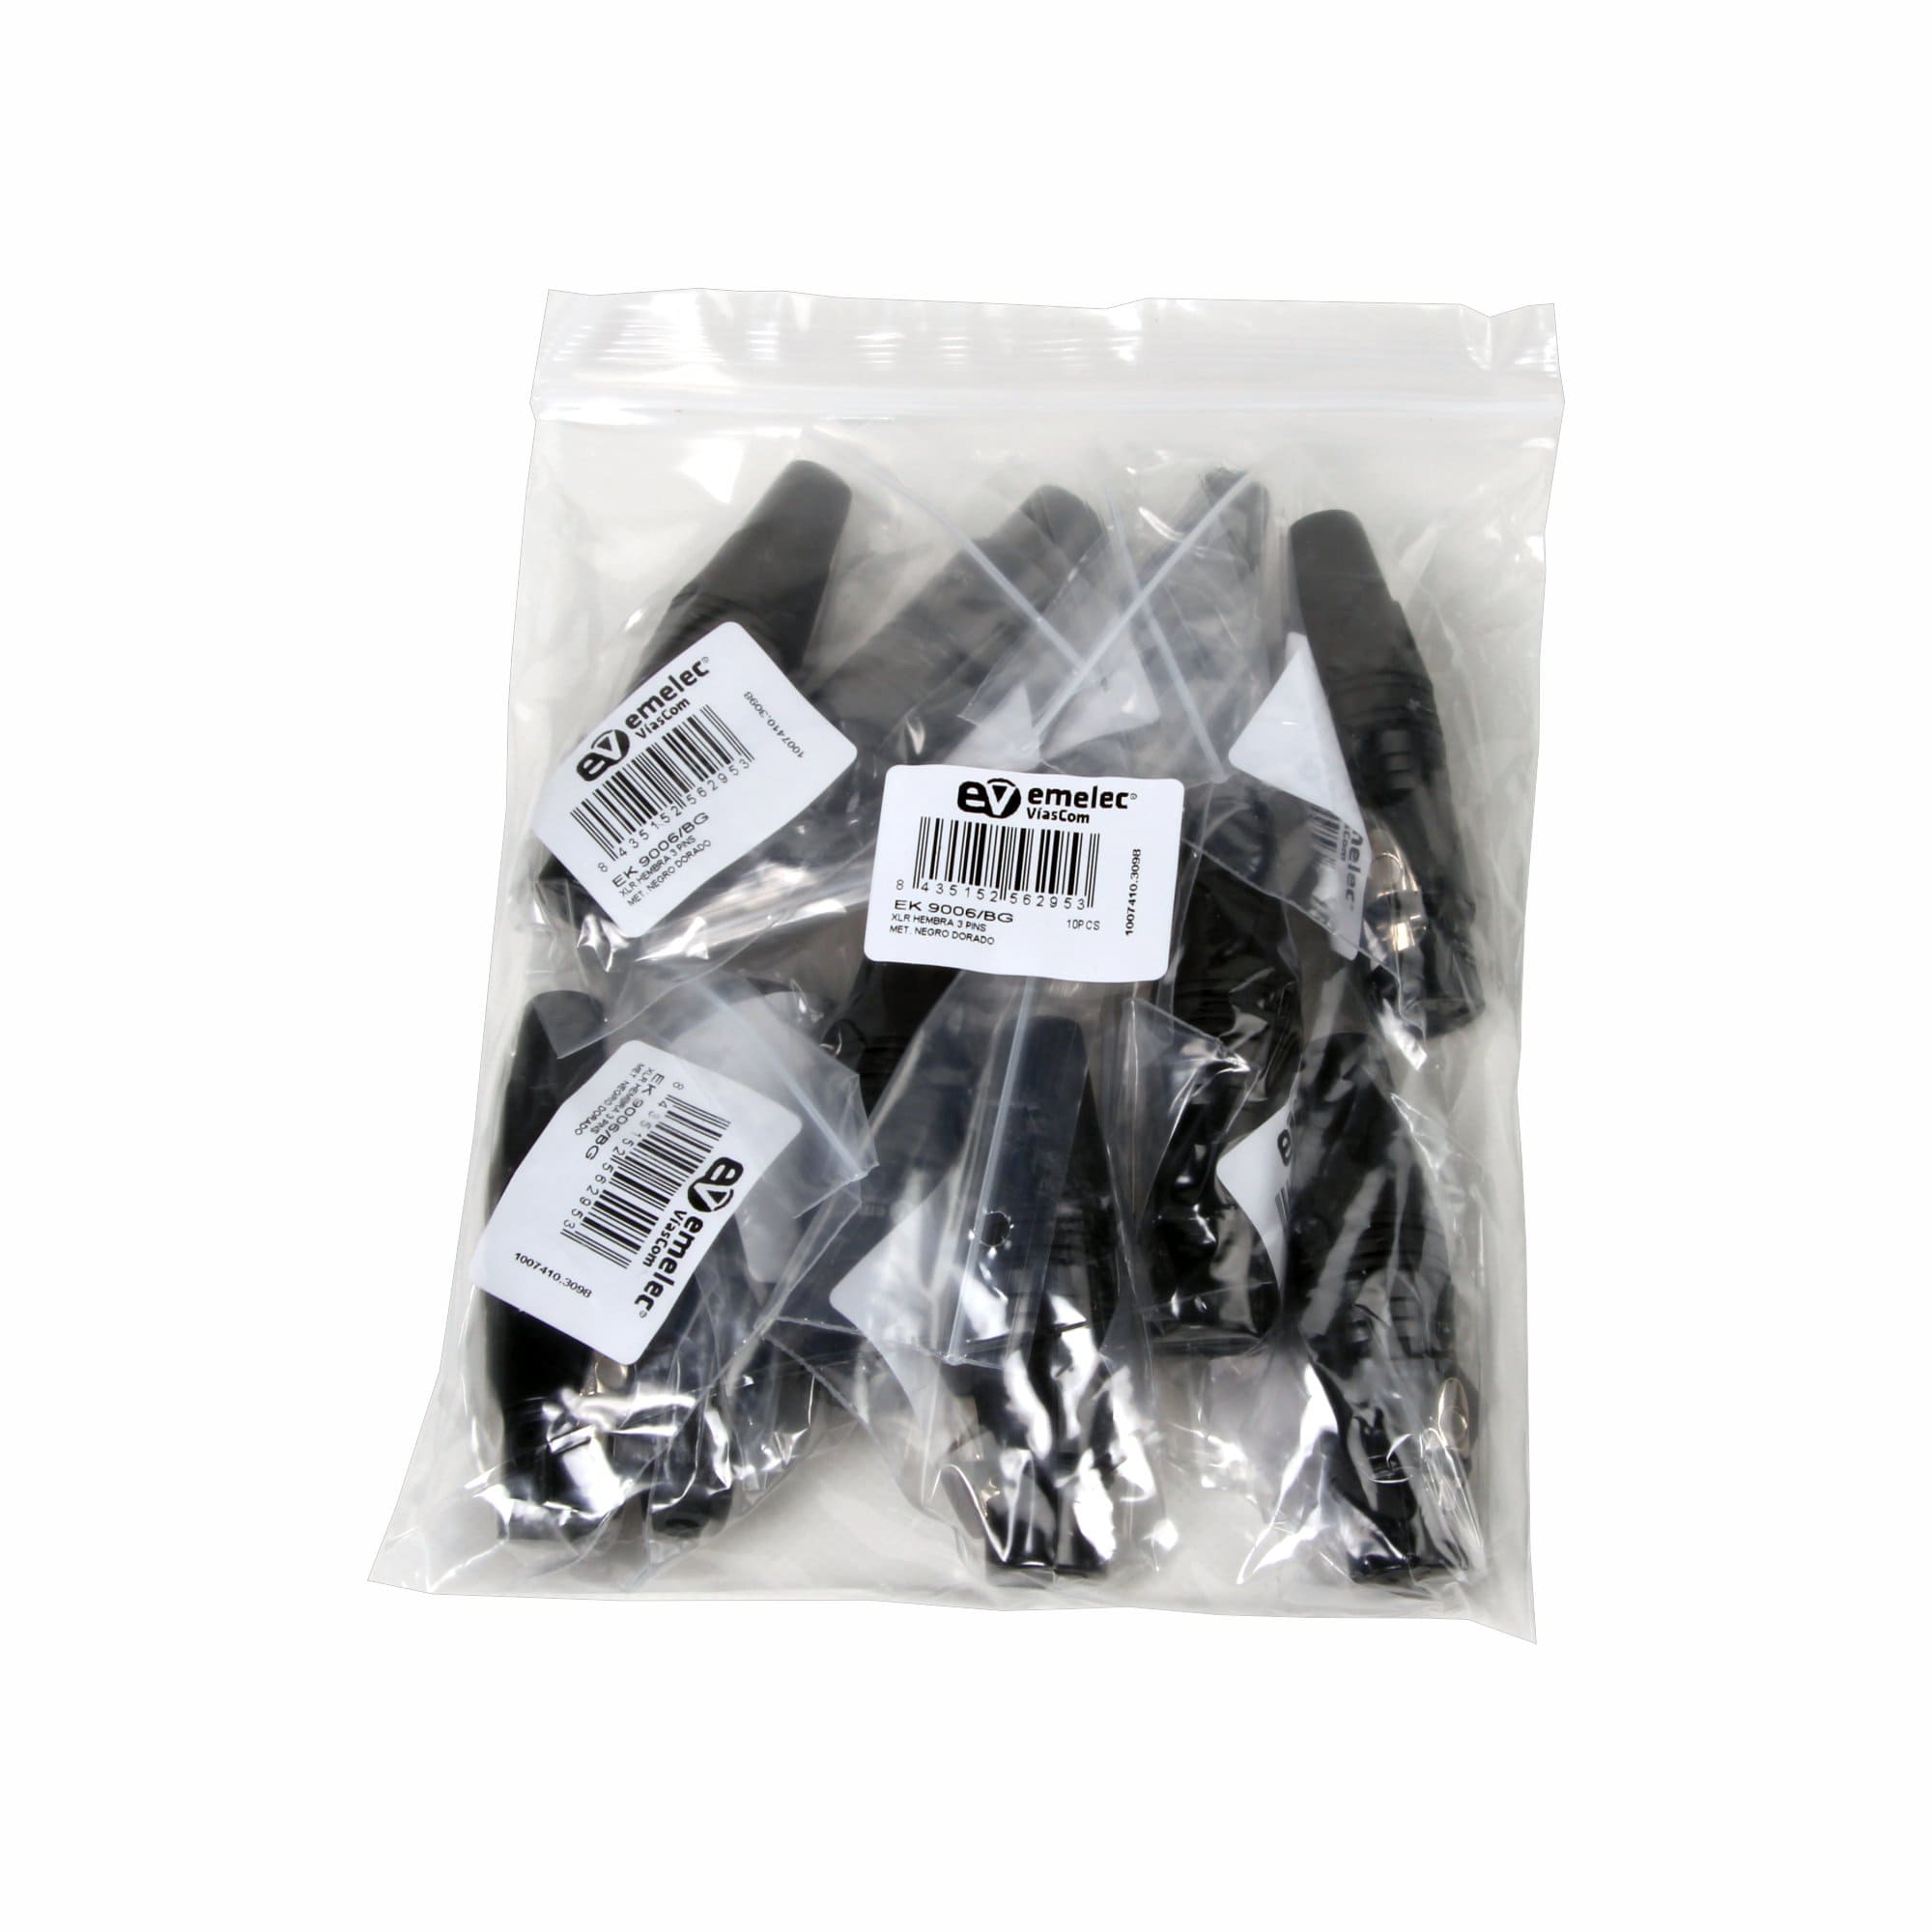 Bolsa de plástico con 10 Conectores XLR Hembra negro de Emelec VíasCom